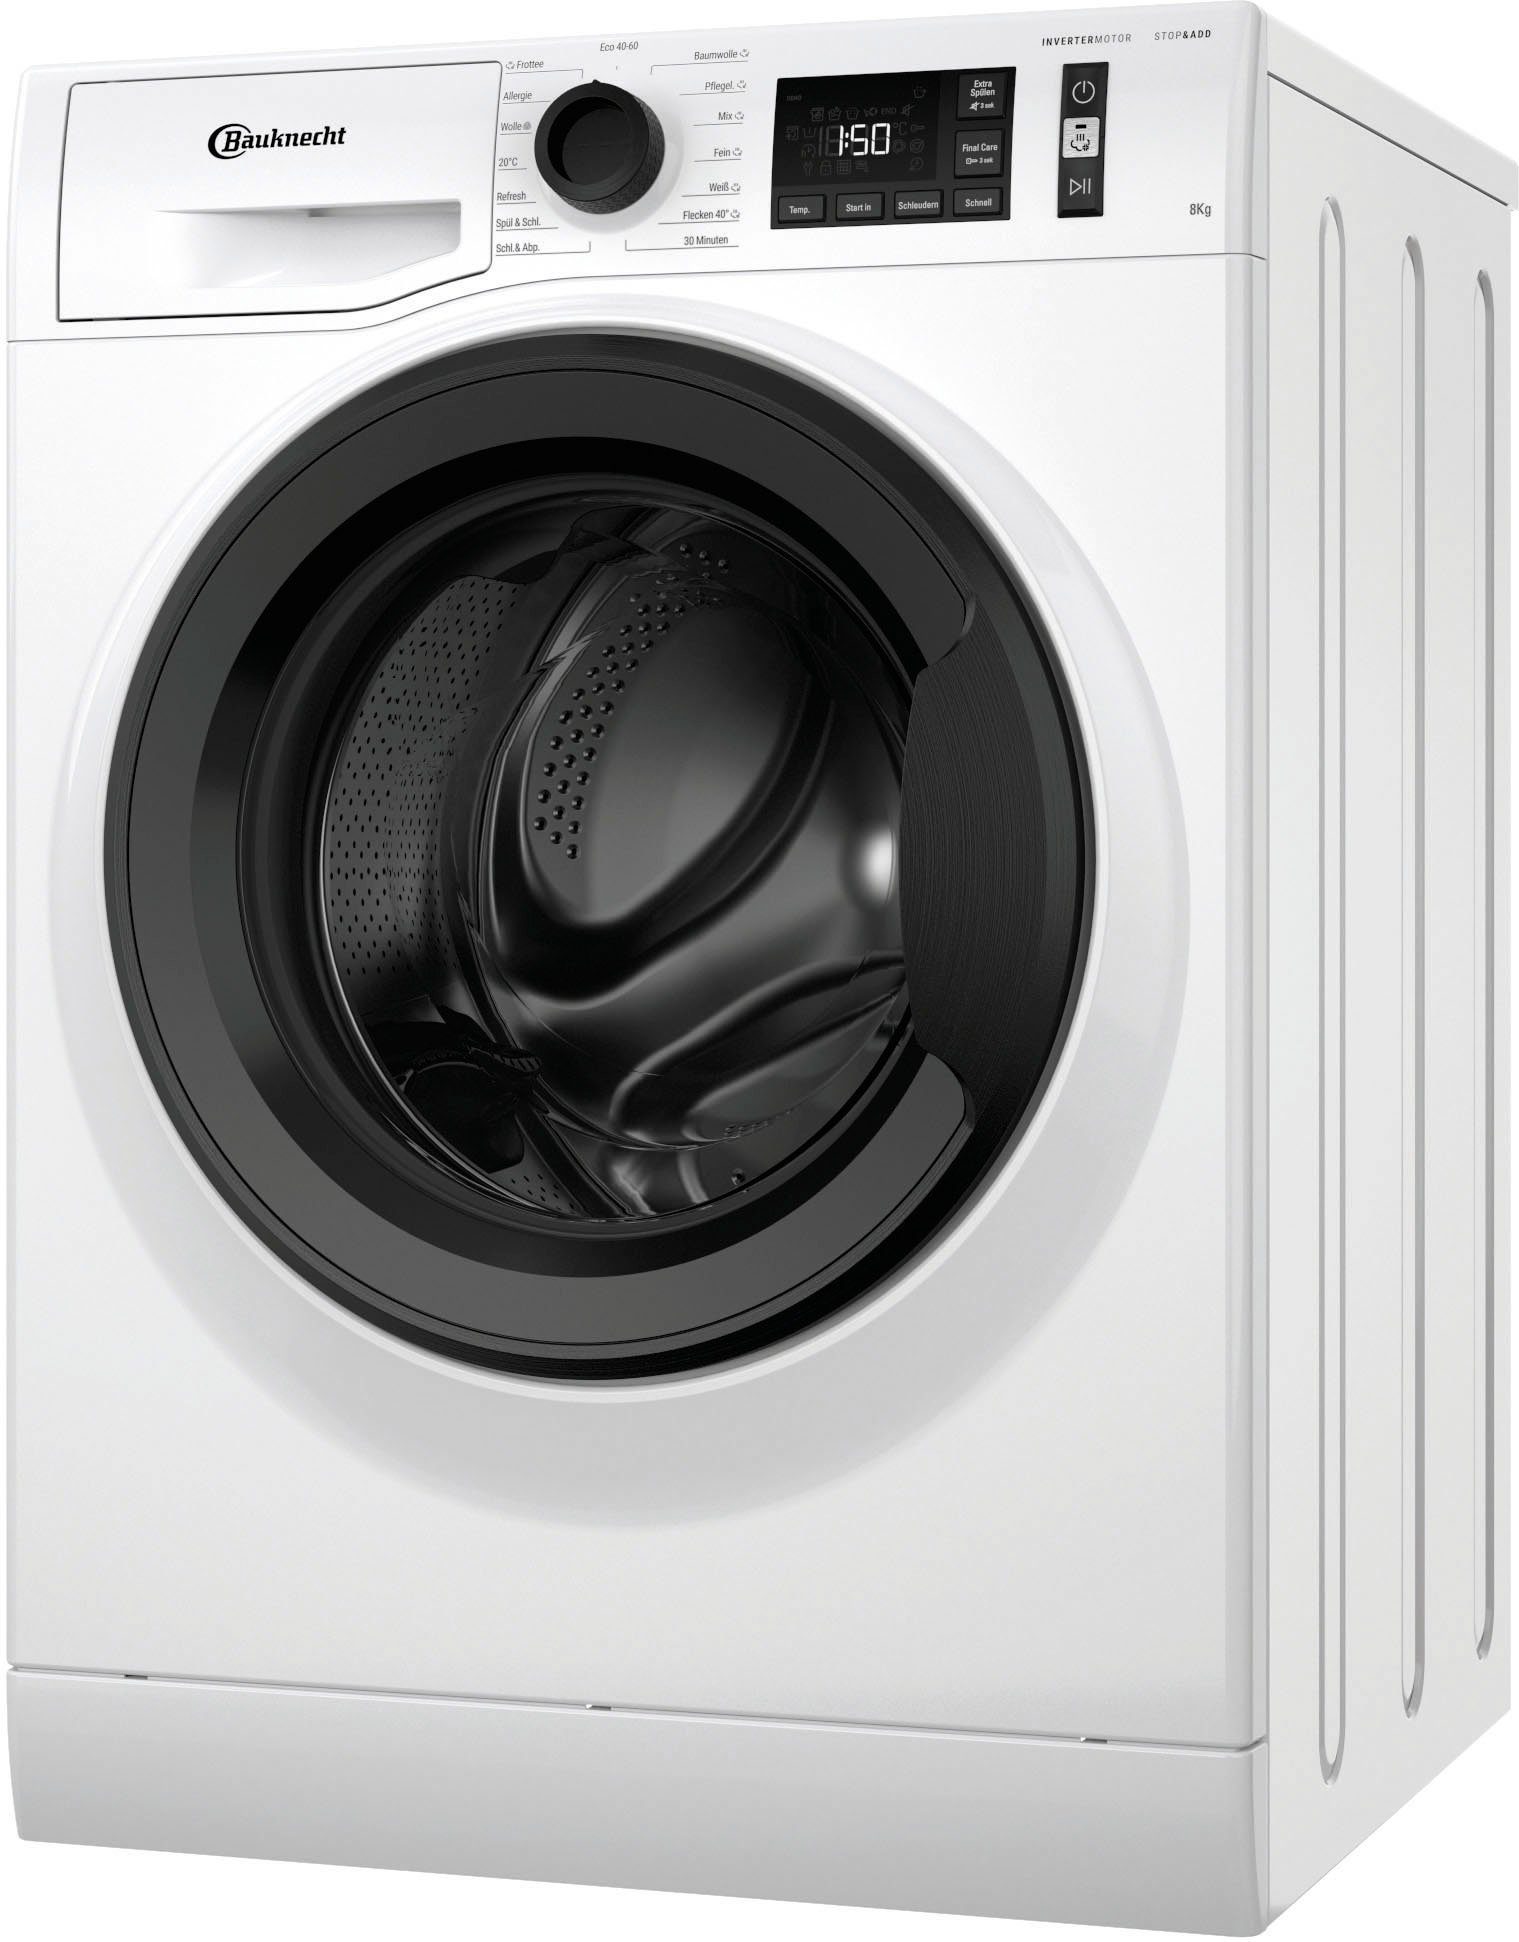 BAUKNECHT Waschmaschine WM Elite 811 C, 8 kg, 1400 U/min online kaufen |  OTTO